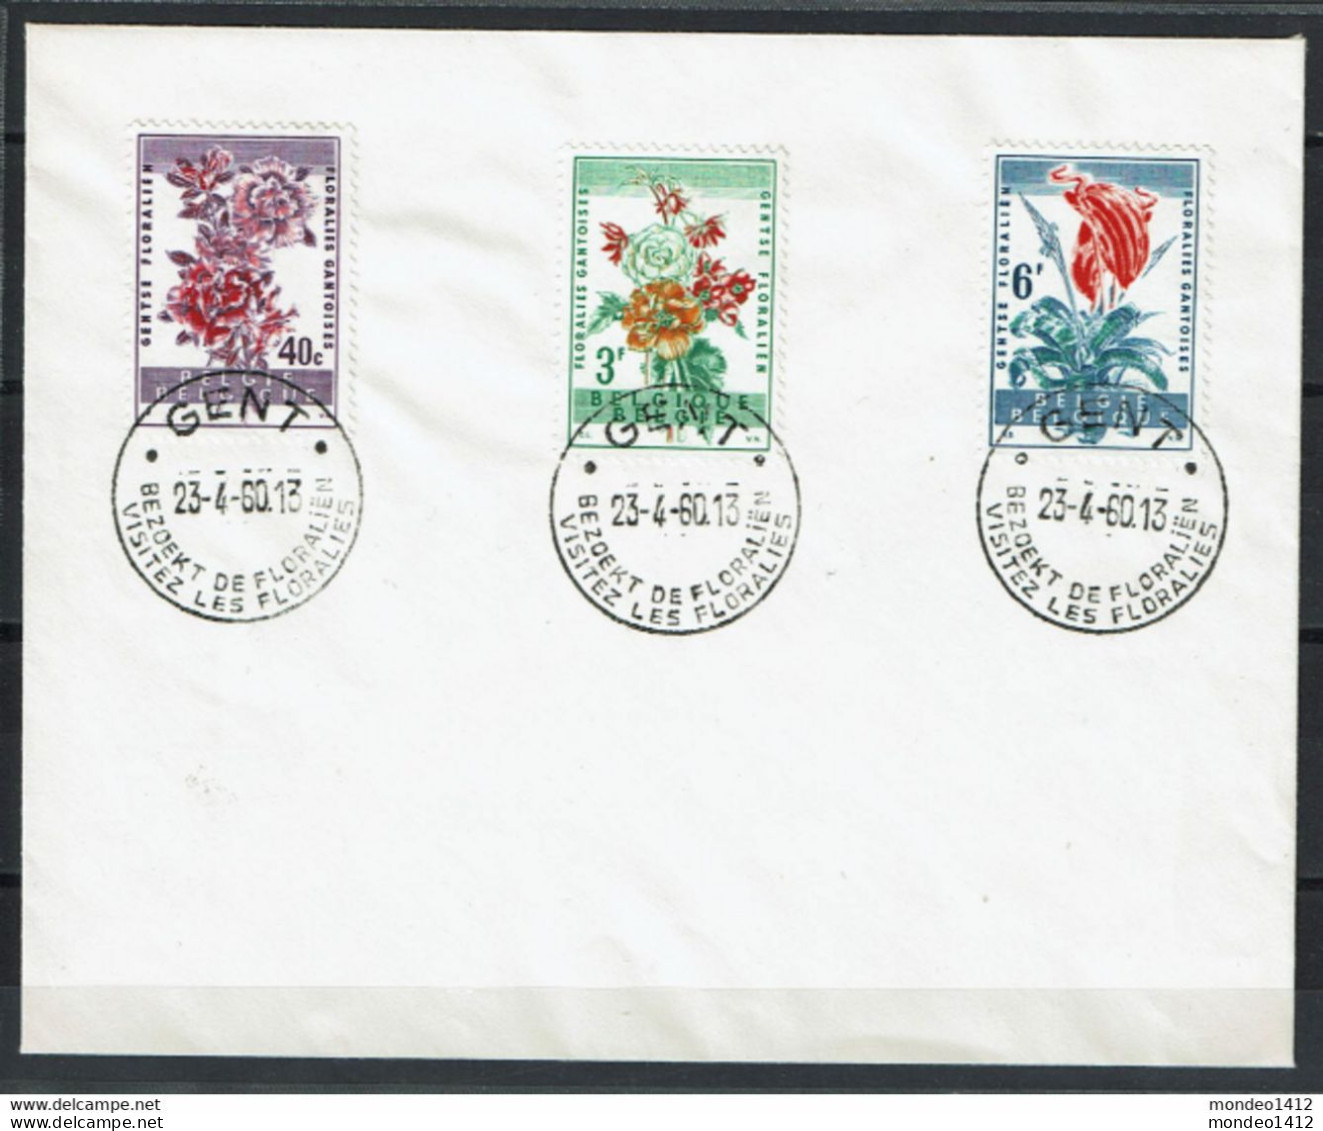 België - 1122-1124 - Stempel Gent - Bezoekt De Floraliën - Covers & Documents